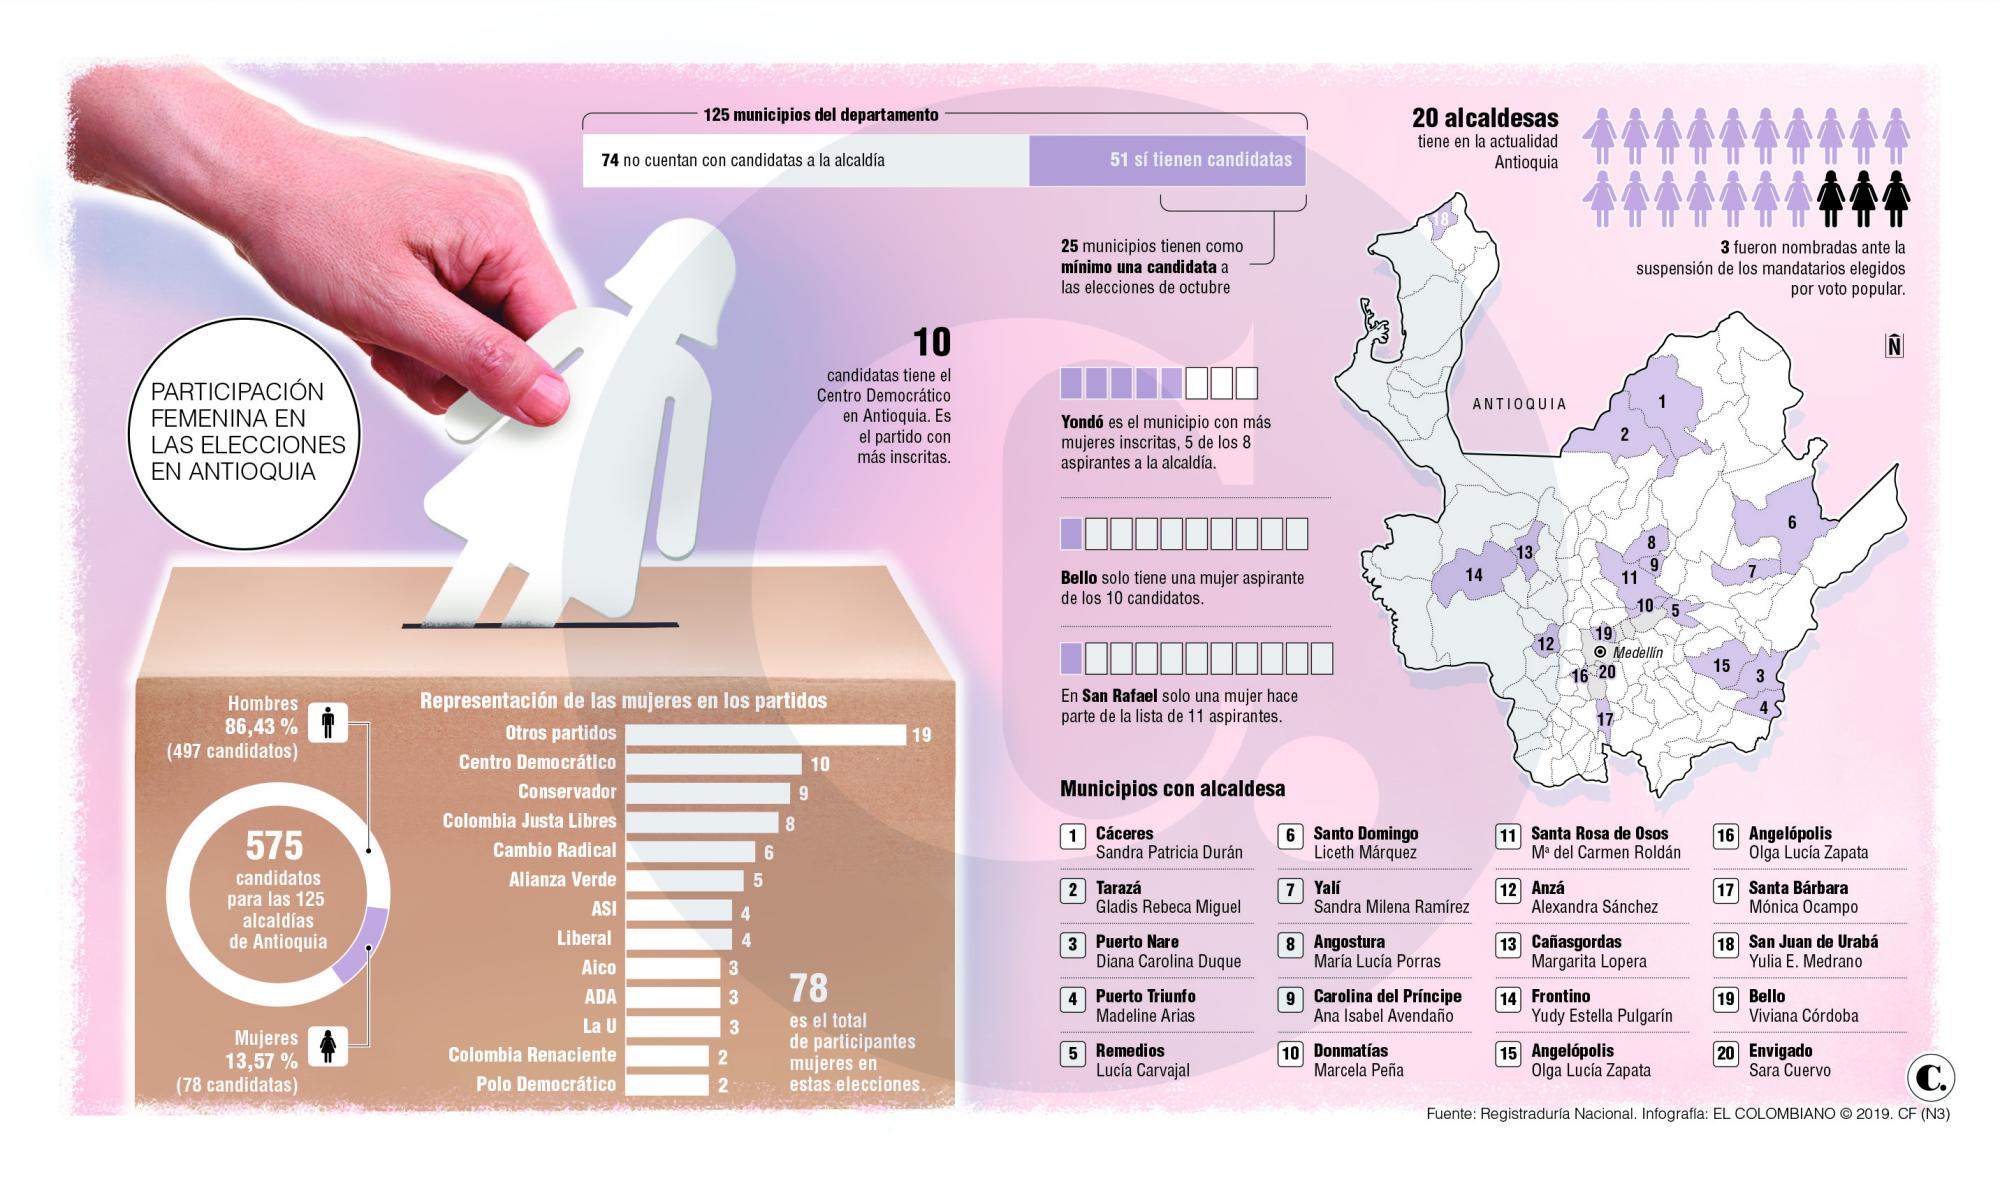 Solo 13 % de candidatos en Antioquia son mujeres